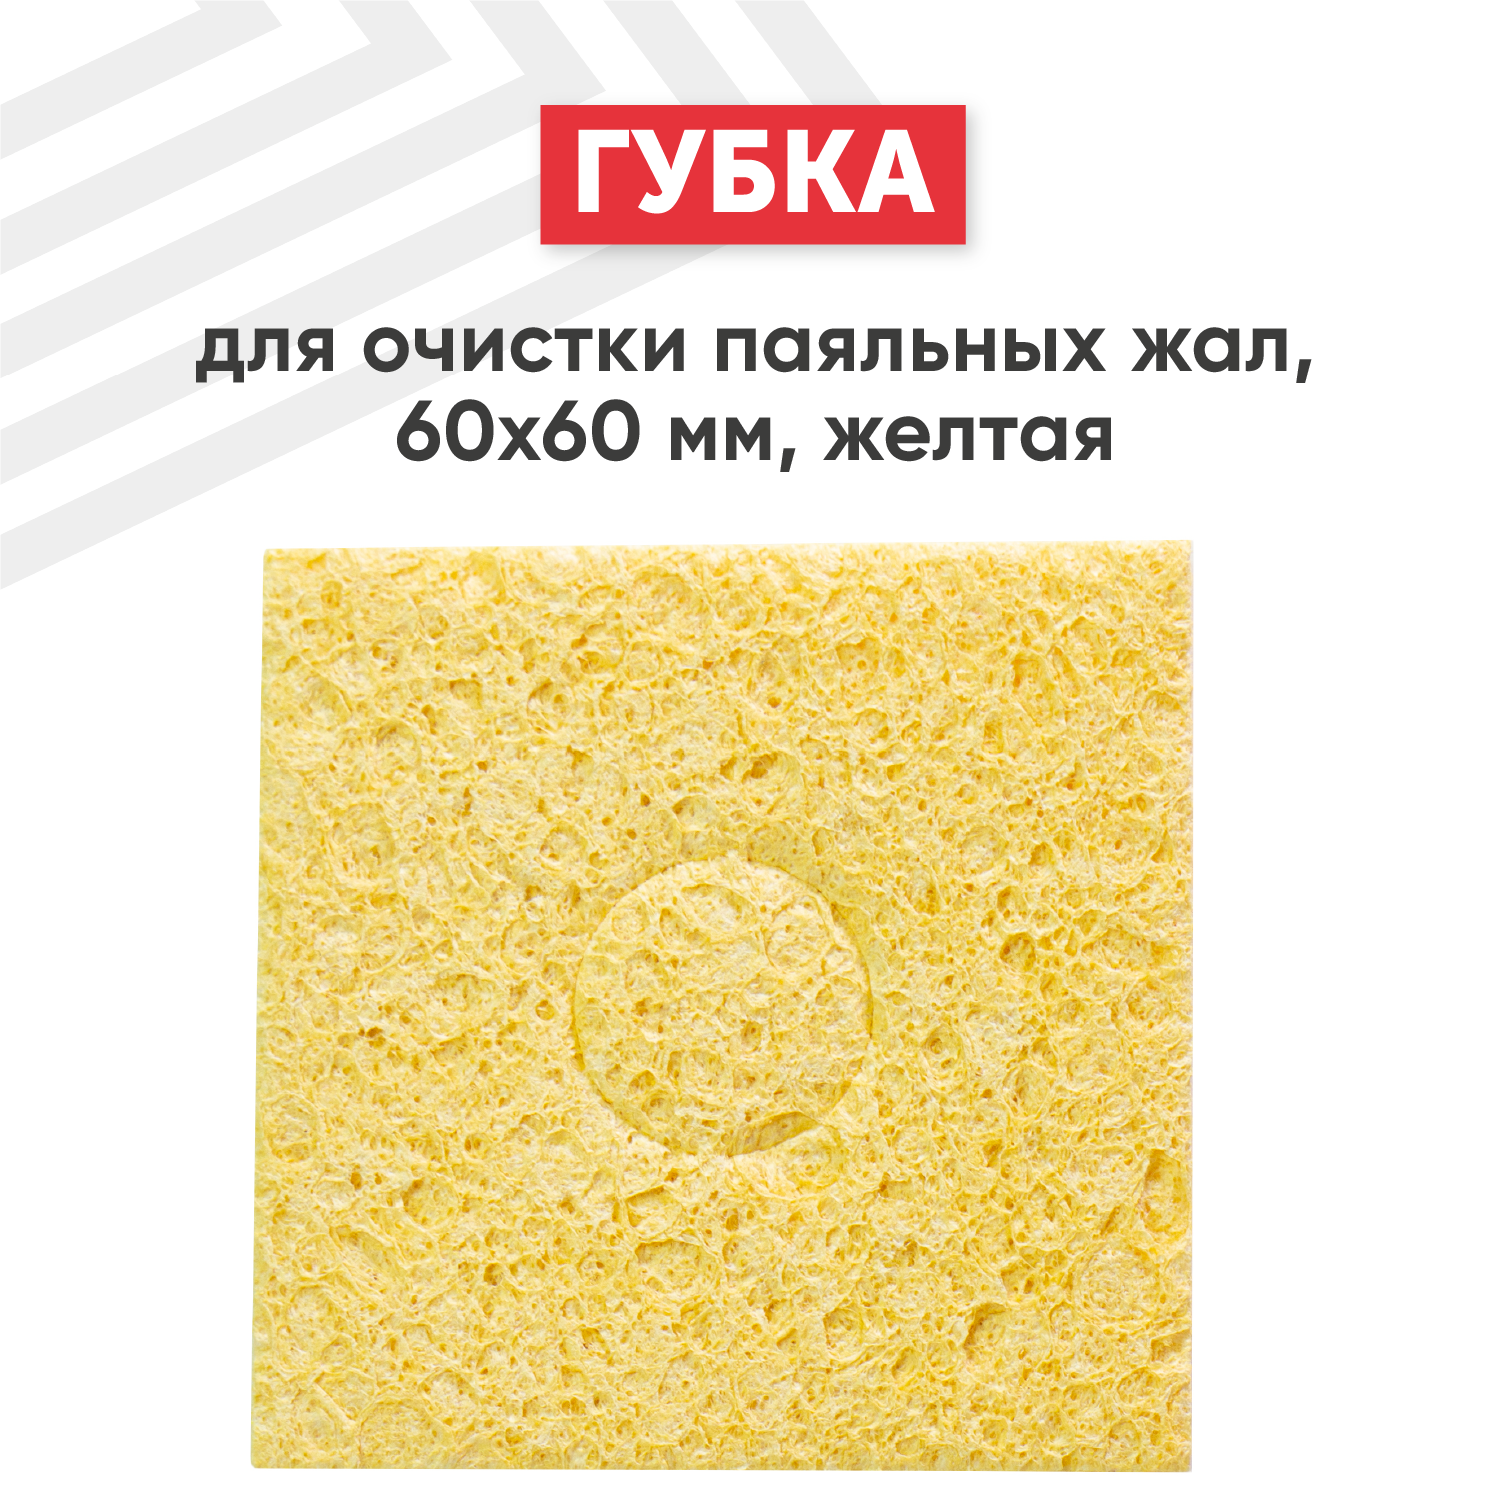 Вискозная губка для очистки паяльных жал (паяльников) от припоя, 60х60 мм, желтая